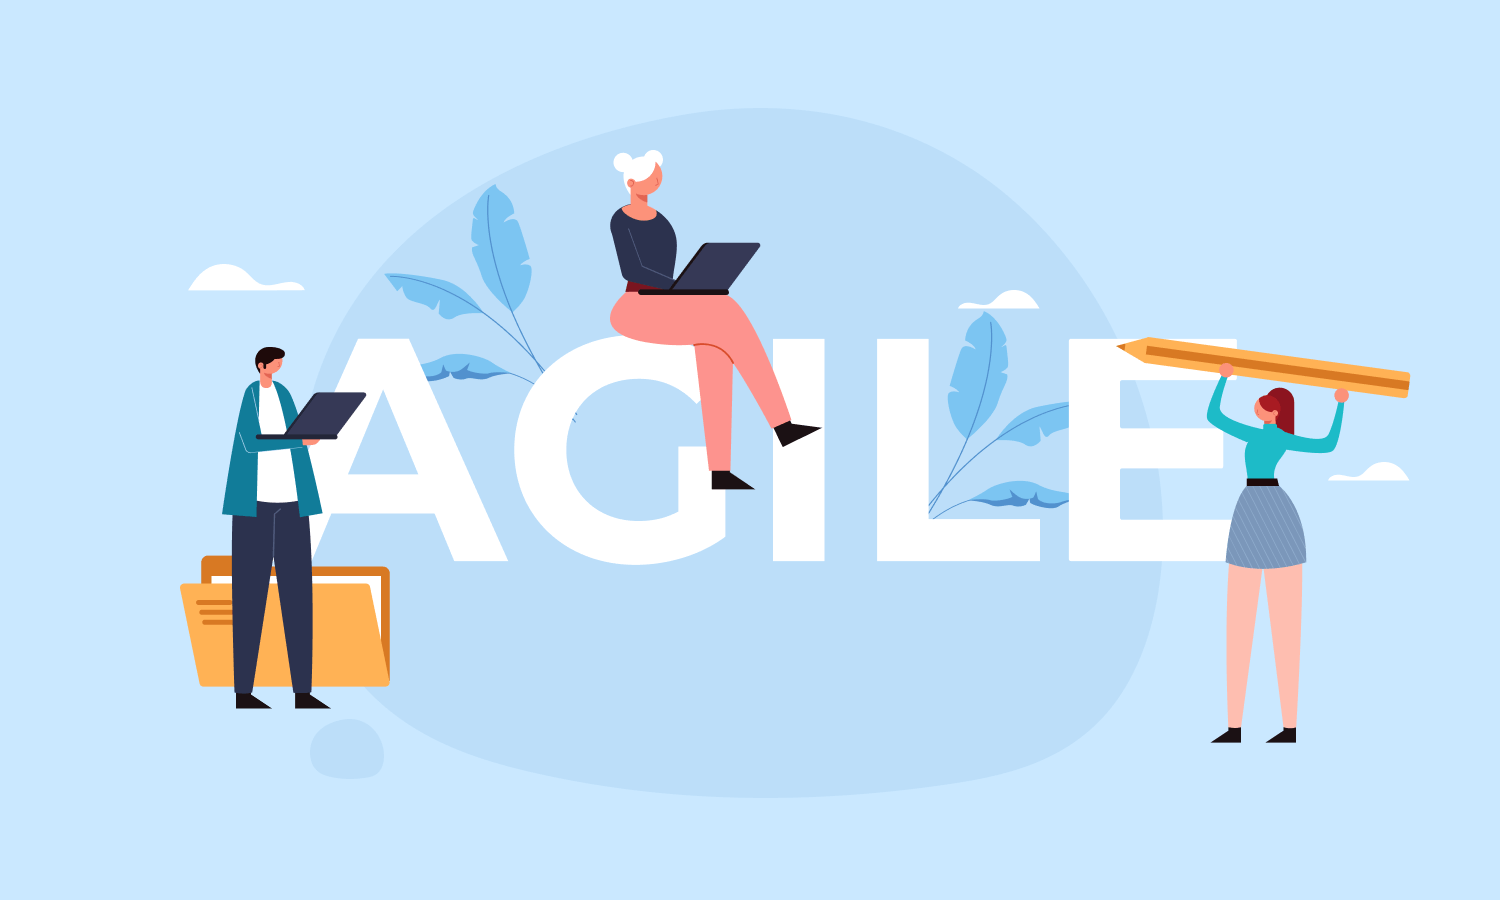 Agile at scale